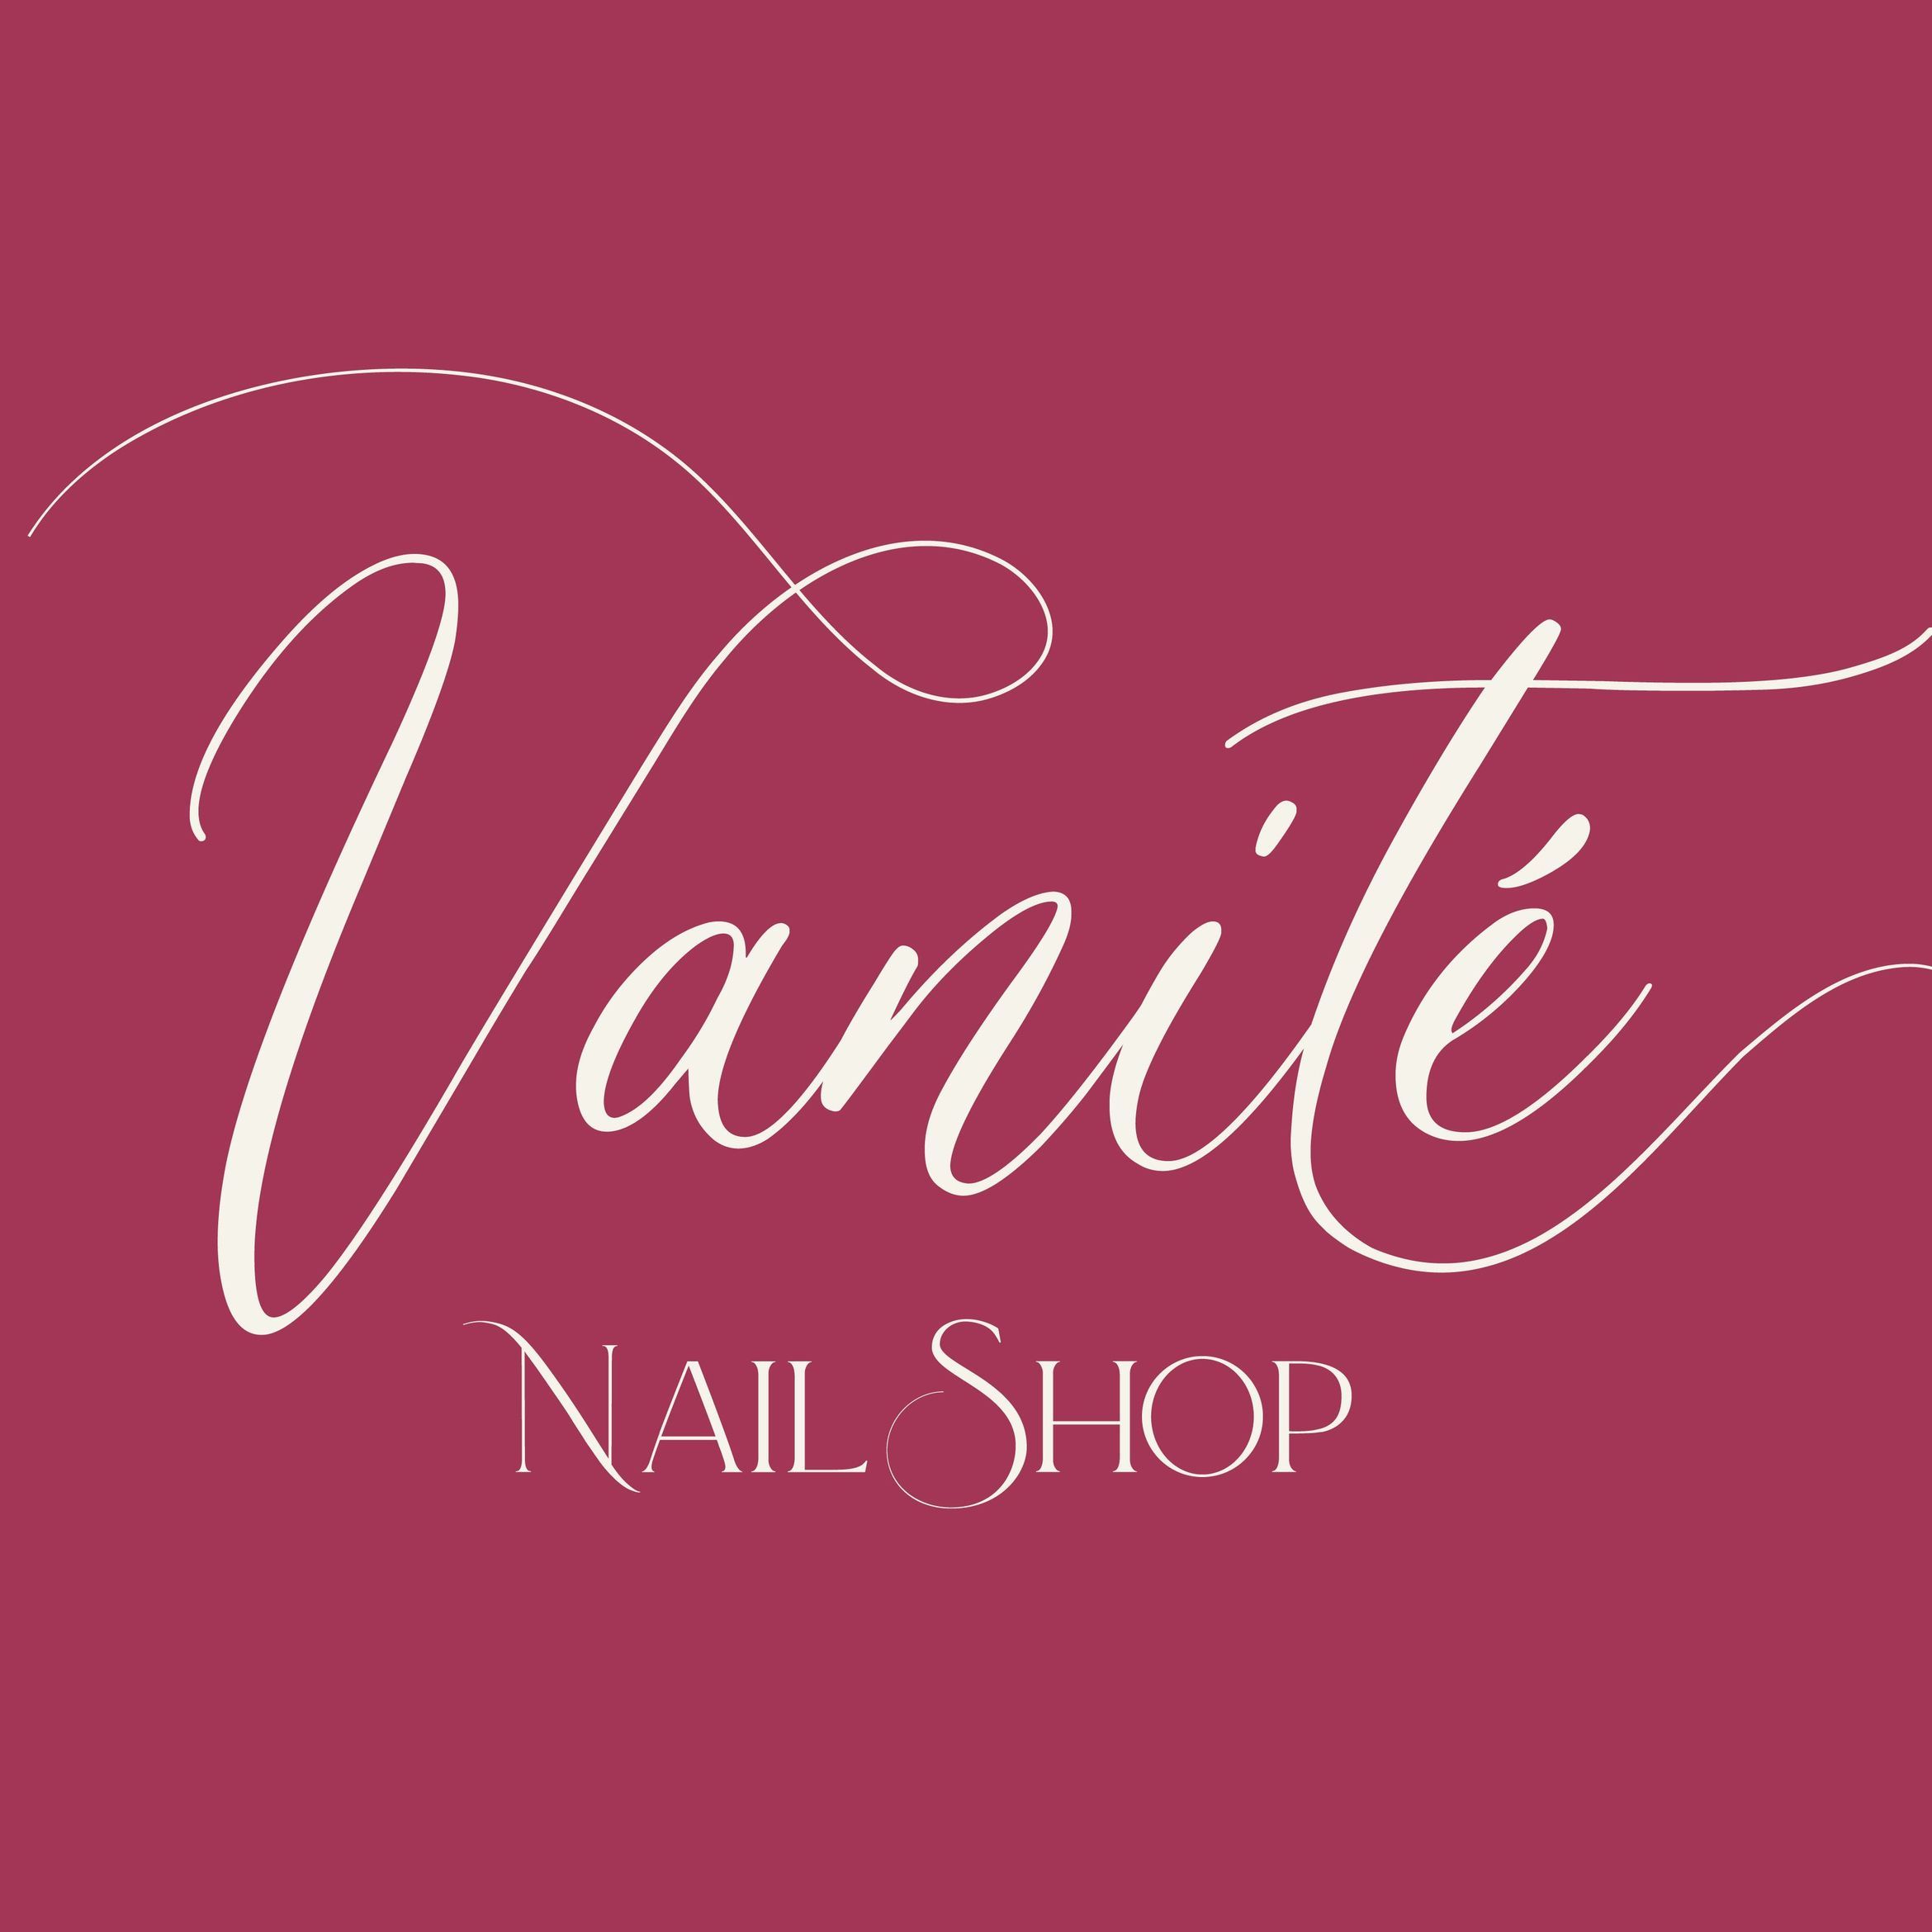 Vanite Nail Studio, 929 Calle Durbec, Vanite Nail Studio, San Juan, 00924